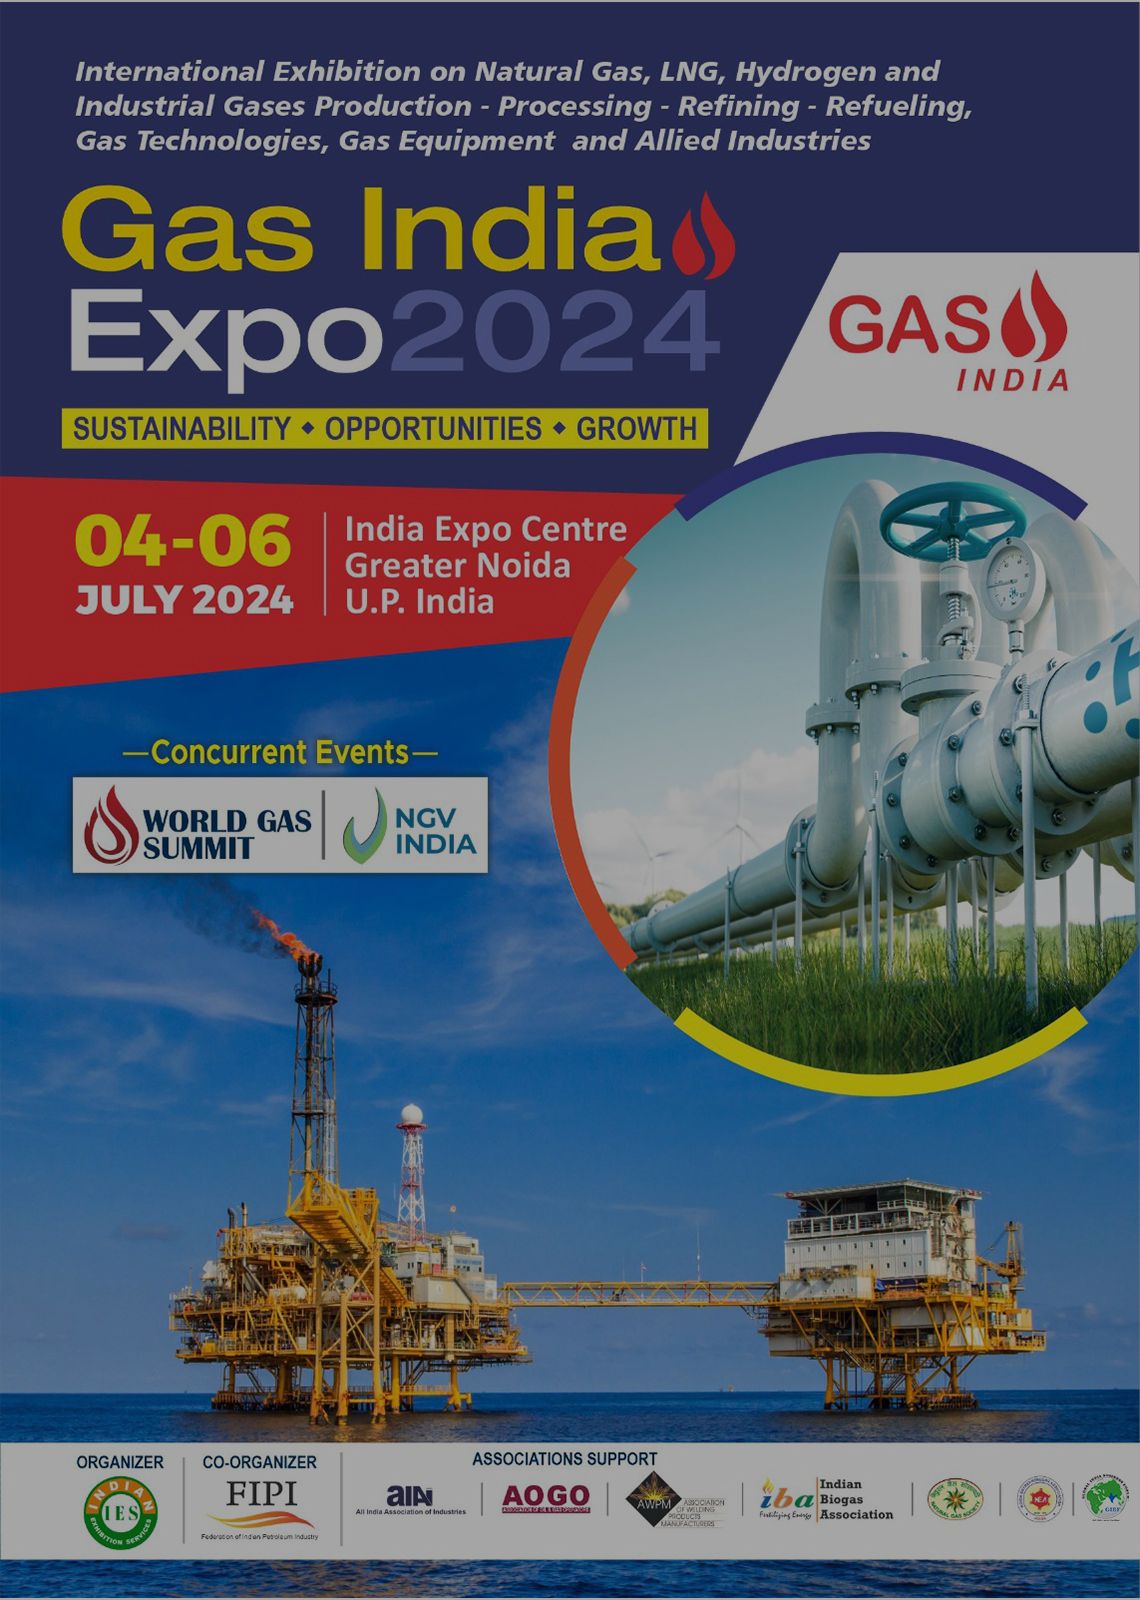 GIBF Collabrative Upcoming Event -  Gas India Expo 2024